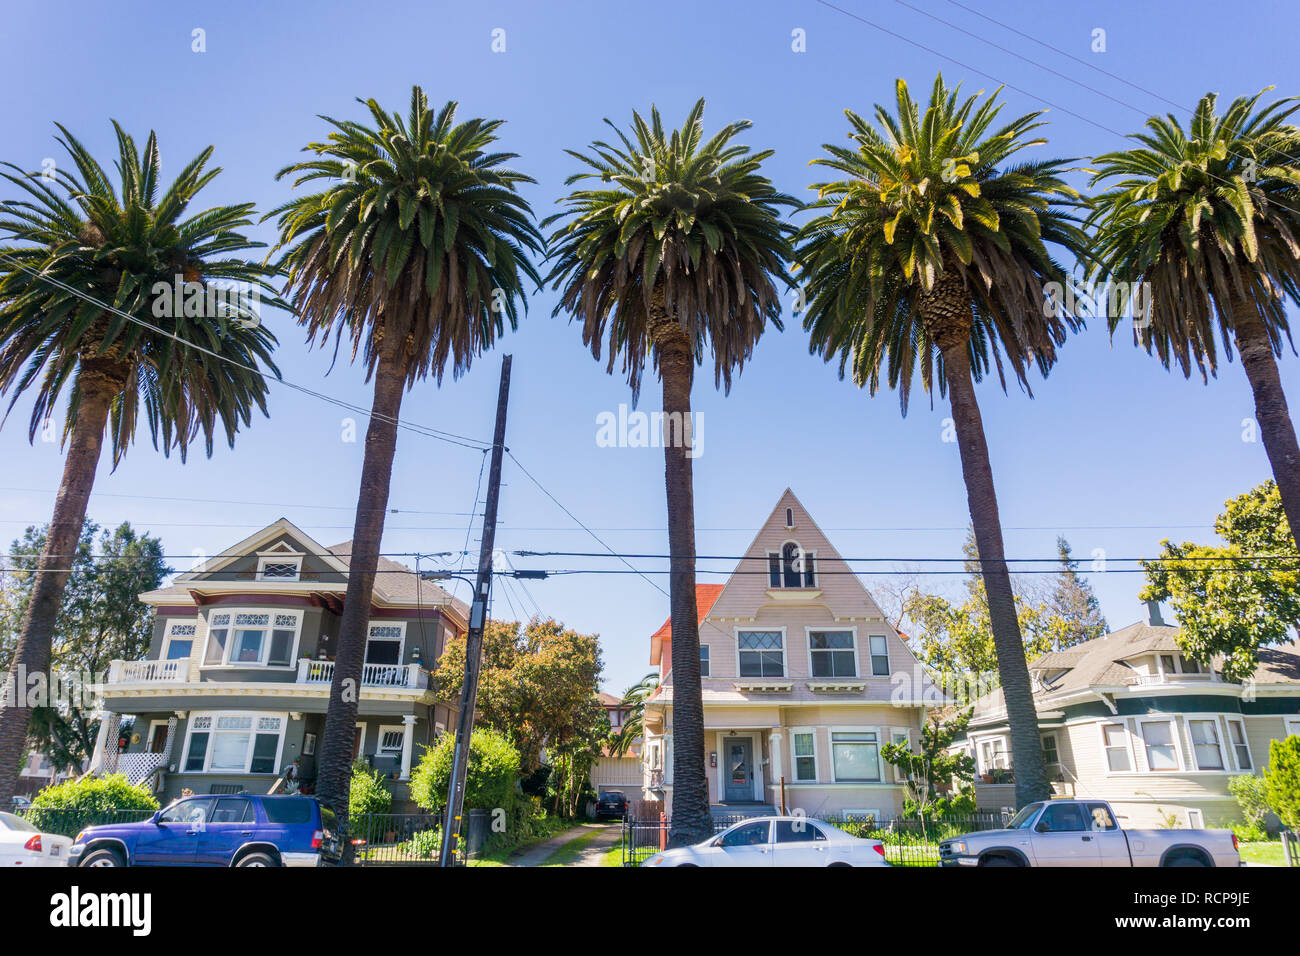 Viejas casas y palmeras en una calle en el centro de San Jose, California Foto de stock